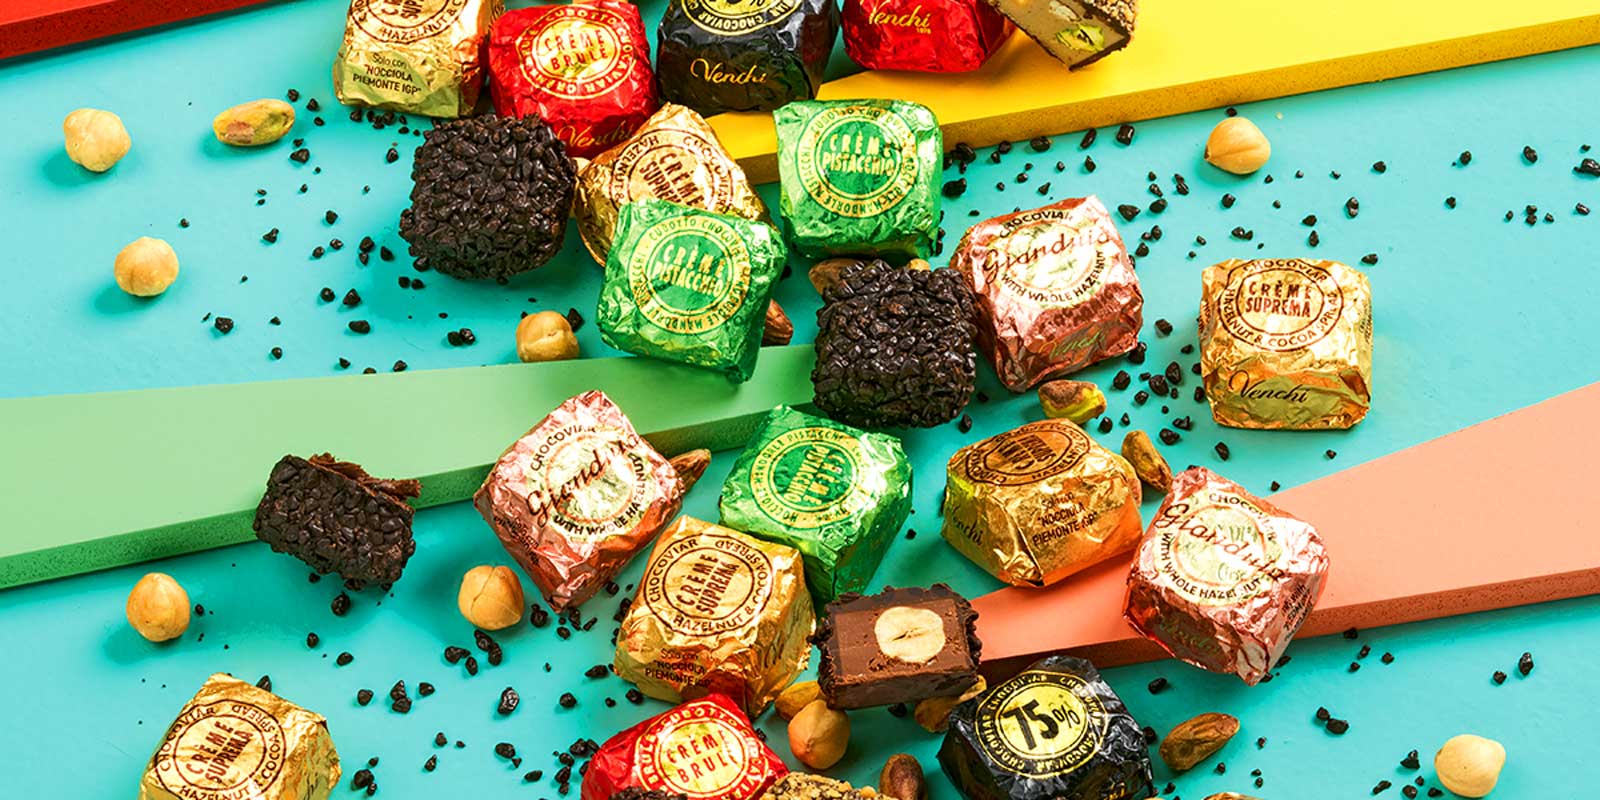 Chocolates Venchi e bombons do Piemonte Receitas deliciosas, caseiras e naturais pensadas para te ajudar a aproveitar.
Desde 1878 oferecemos momentos de alegria todos os dias no perfeito estilo italiano, pensamos no seu bem-estar.